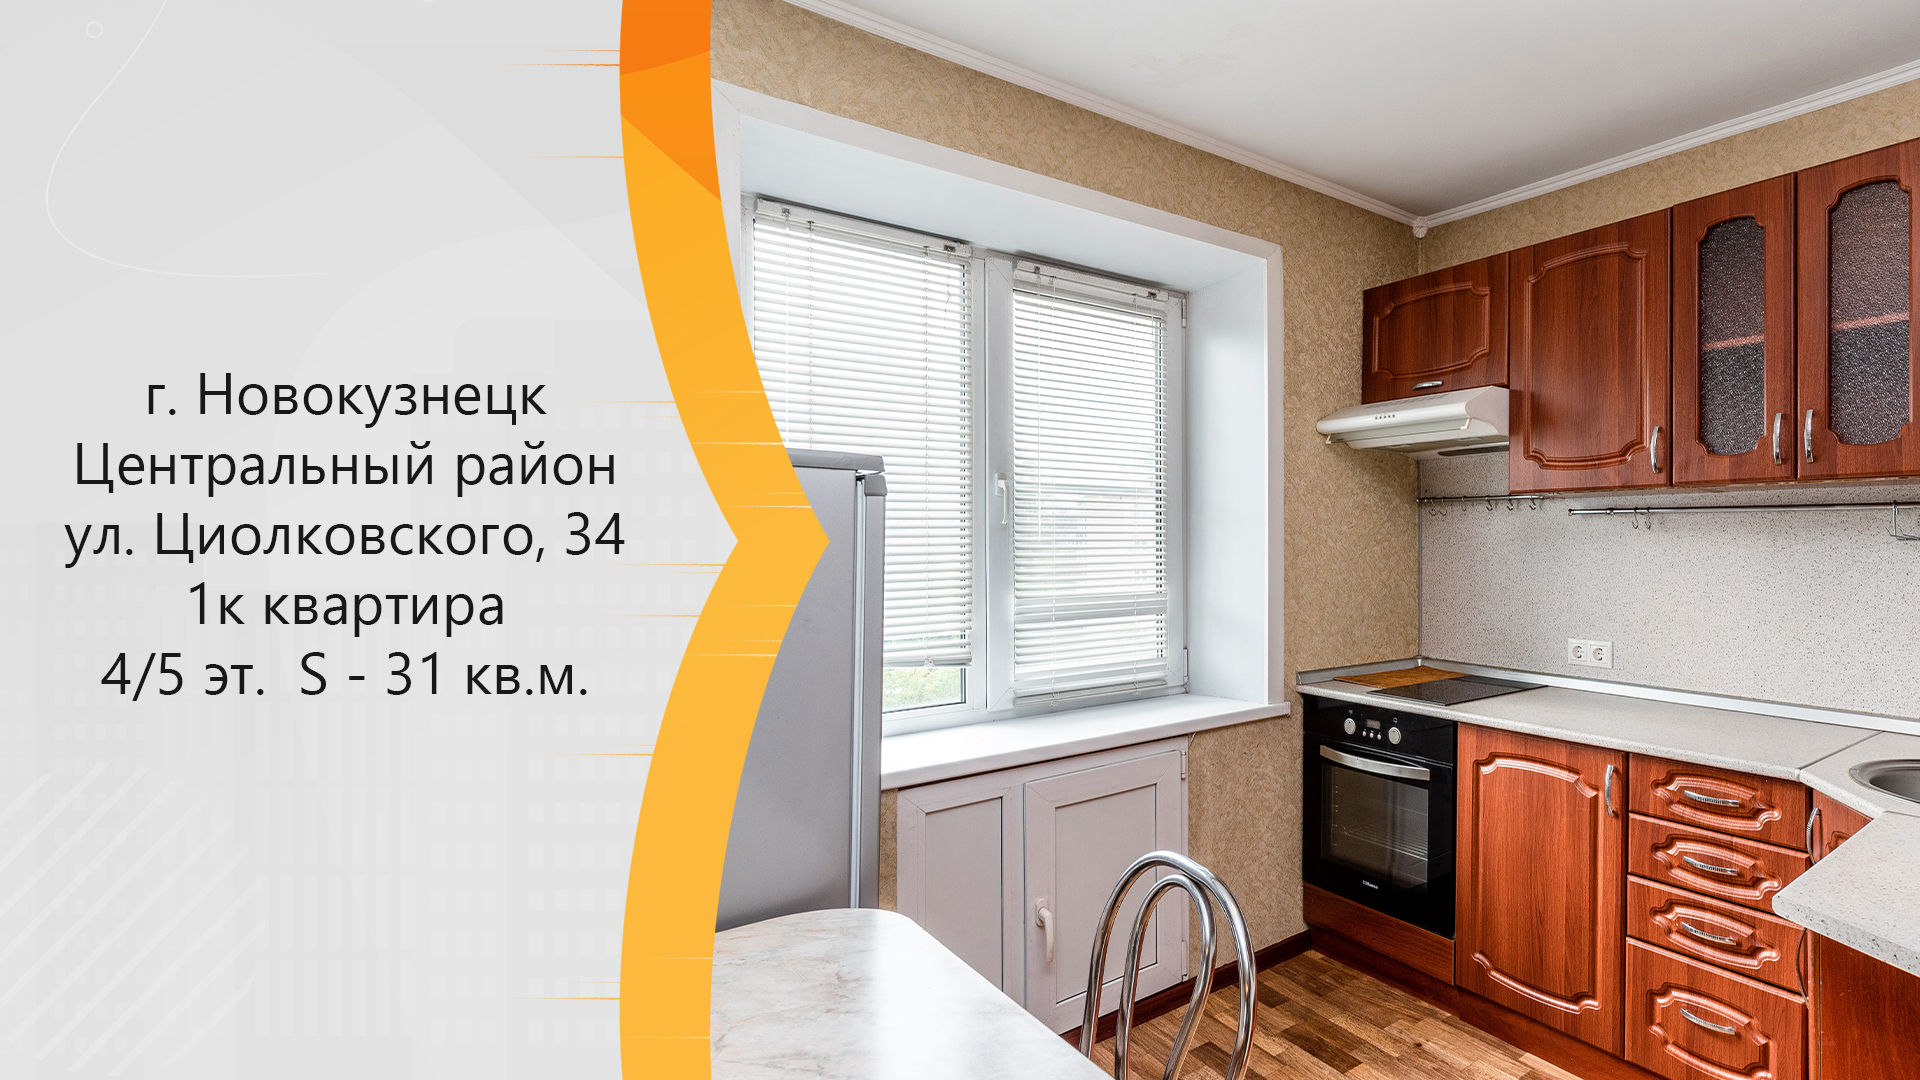 Купить квартиру на Циолковского в Новокузнецке.